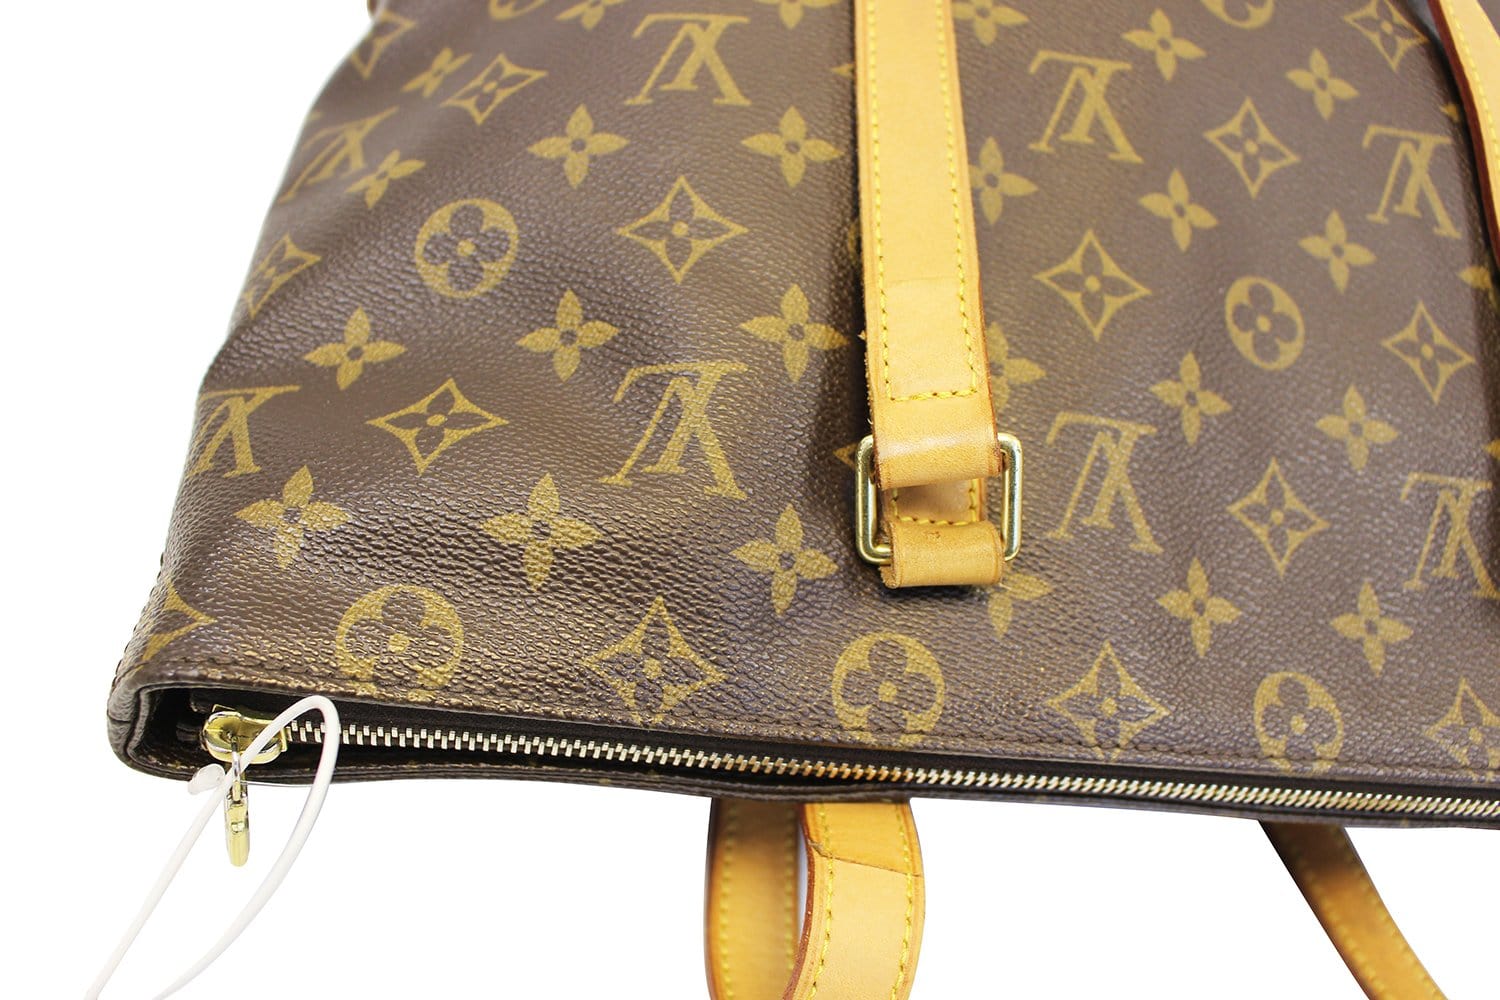 Louis Vuitton Monogram Cabas Mezzo Tote Shoulder Handbag